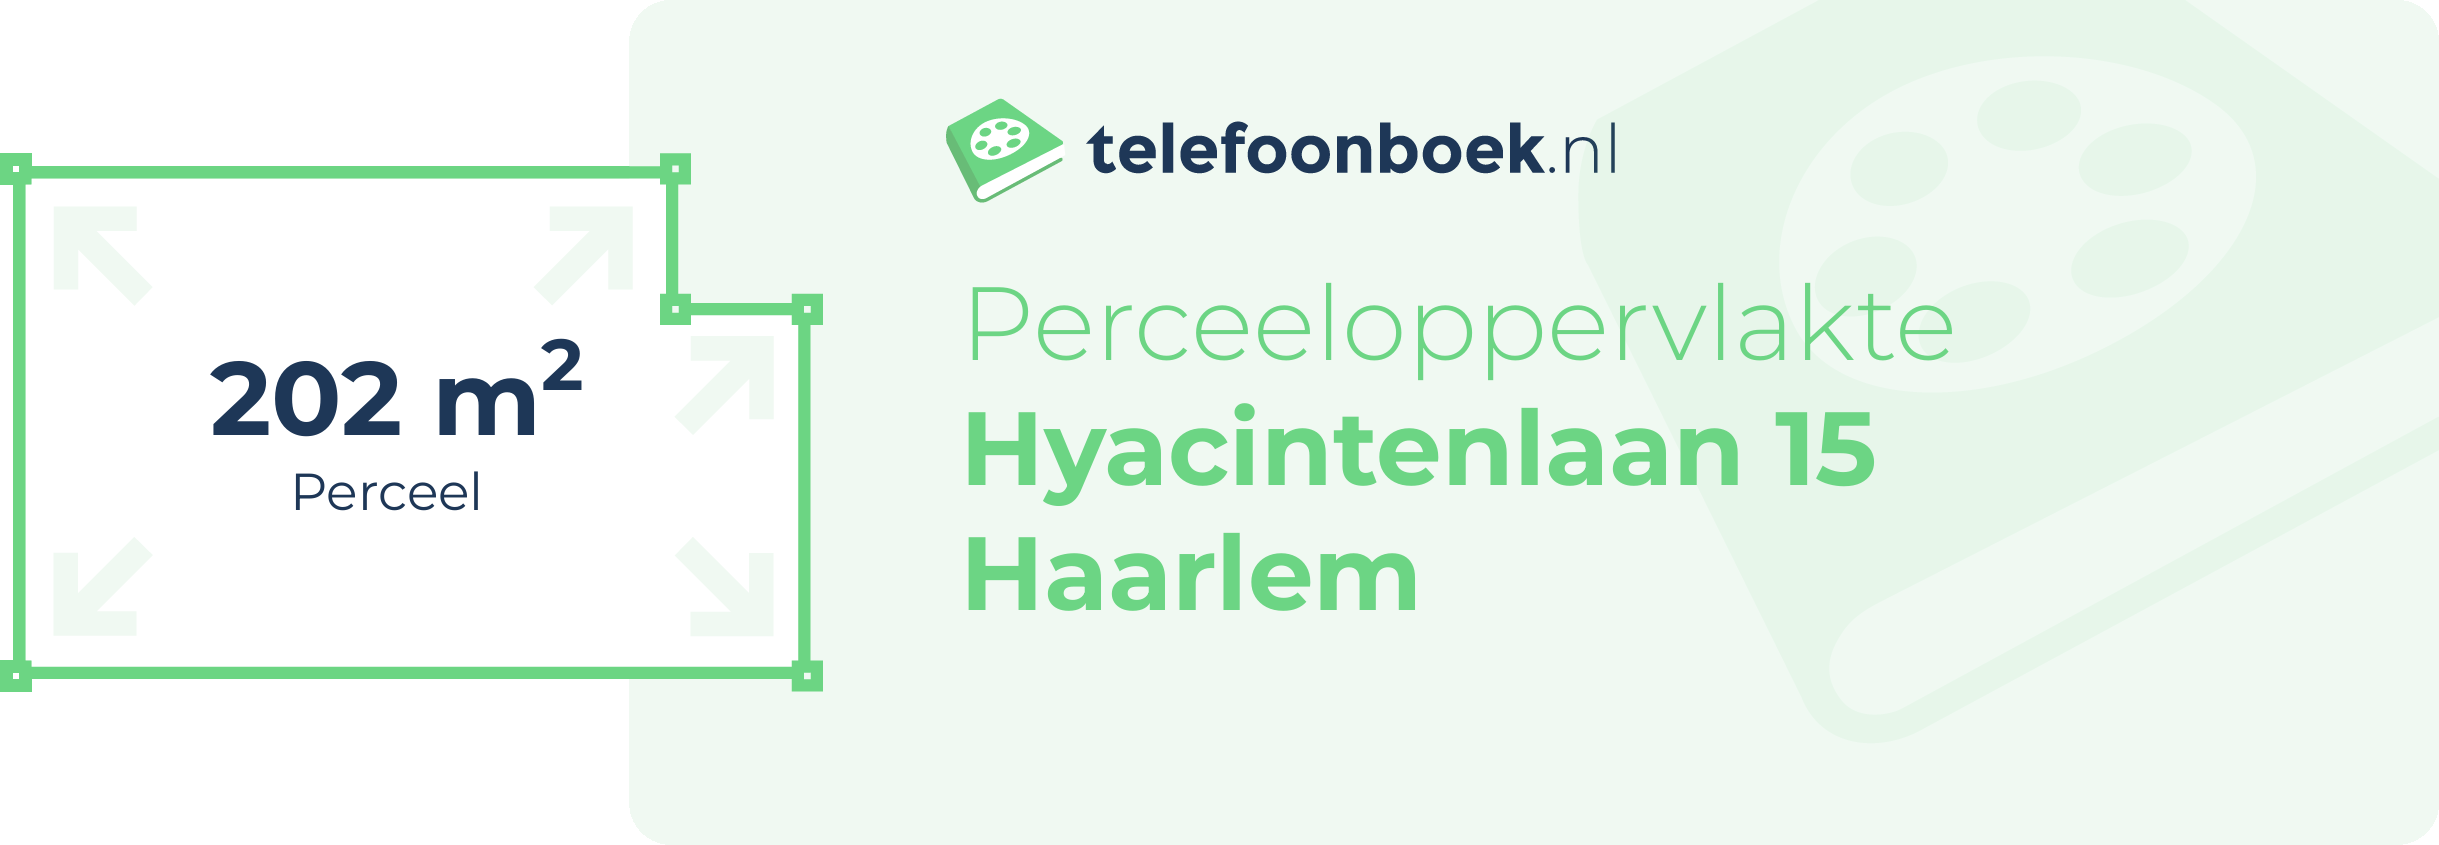 Perceeloppervlakte Hyacintenlaan 15 Haarlem